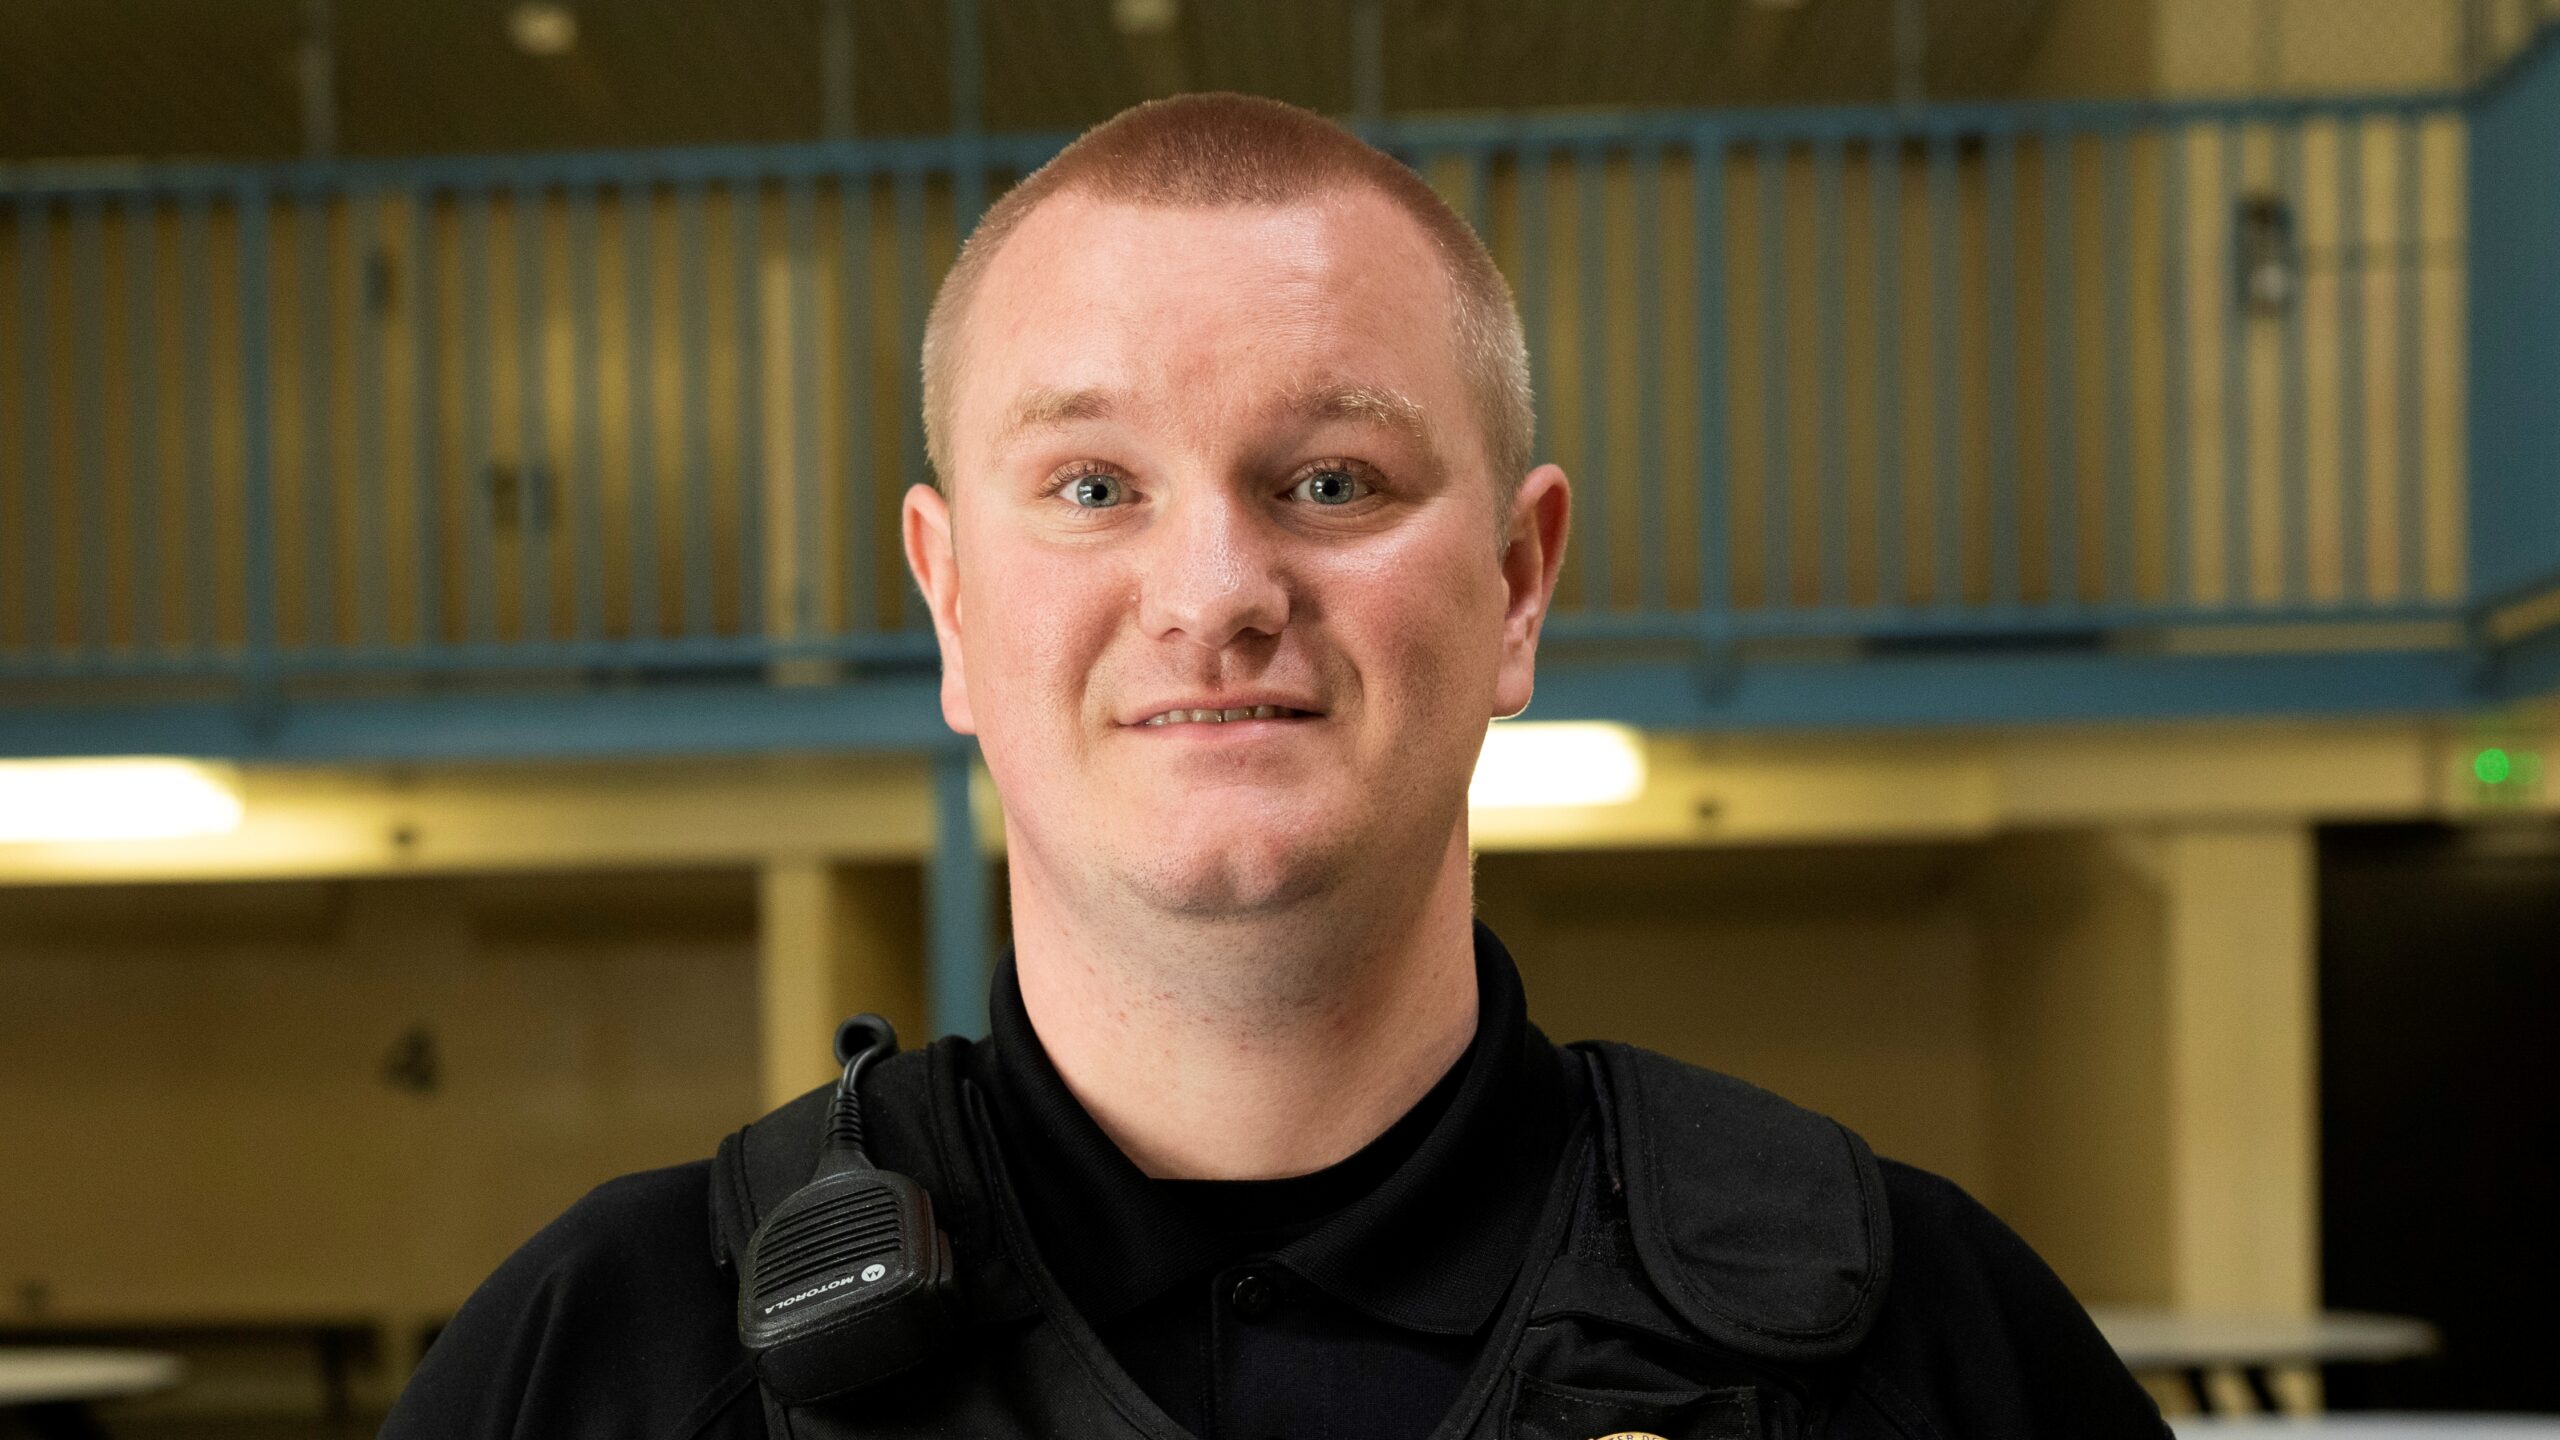 LCSD detention officer Jonathan Belt smiling